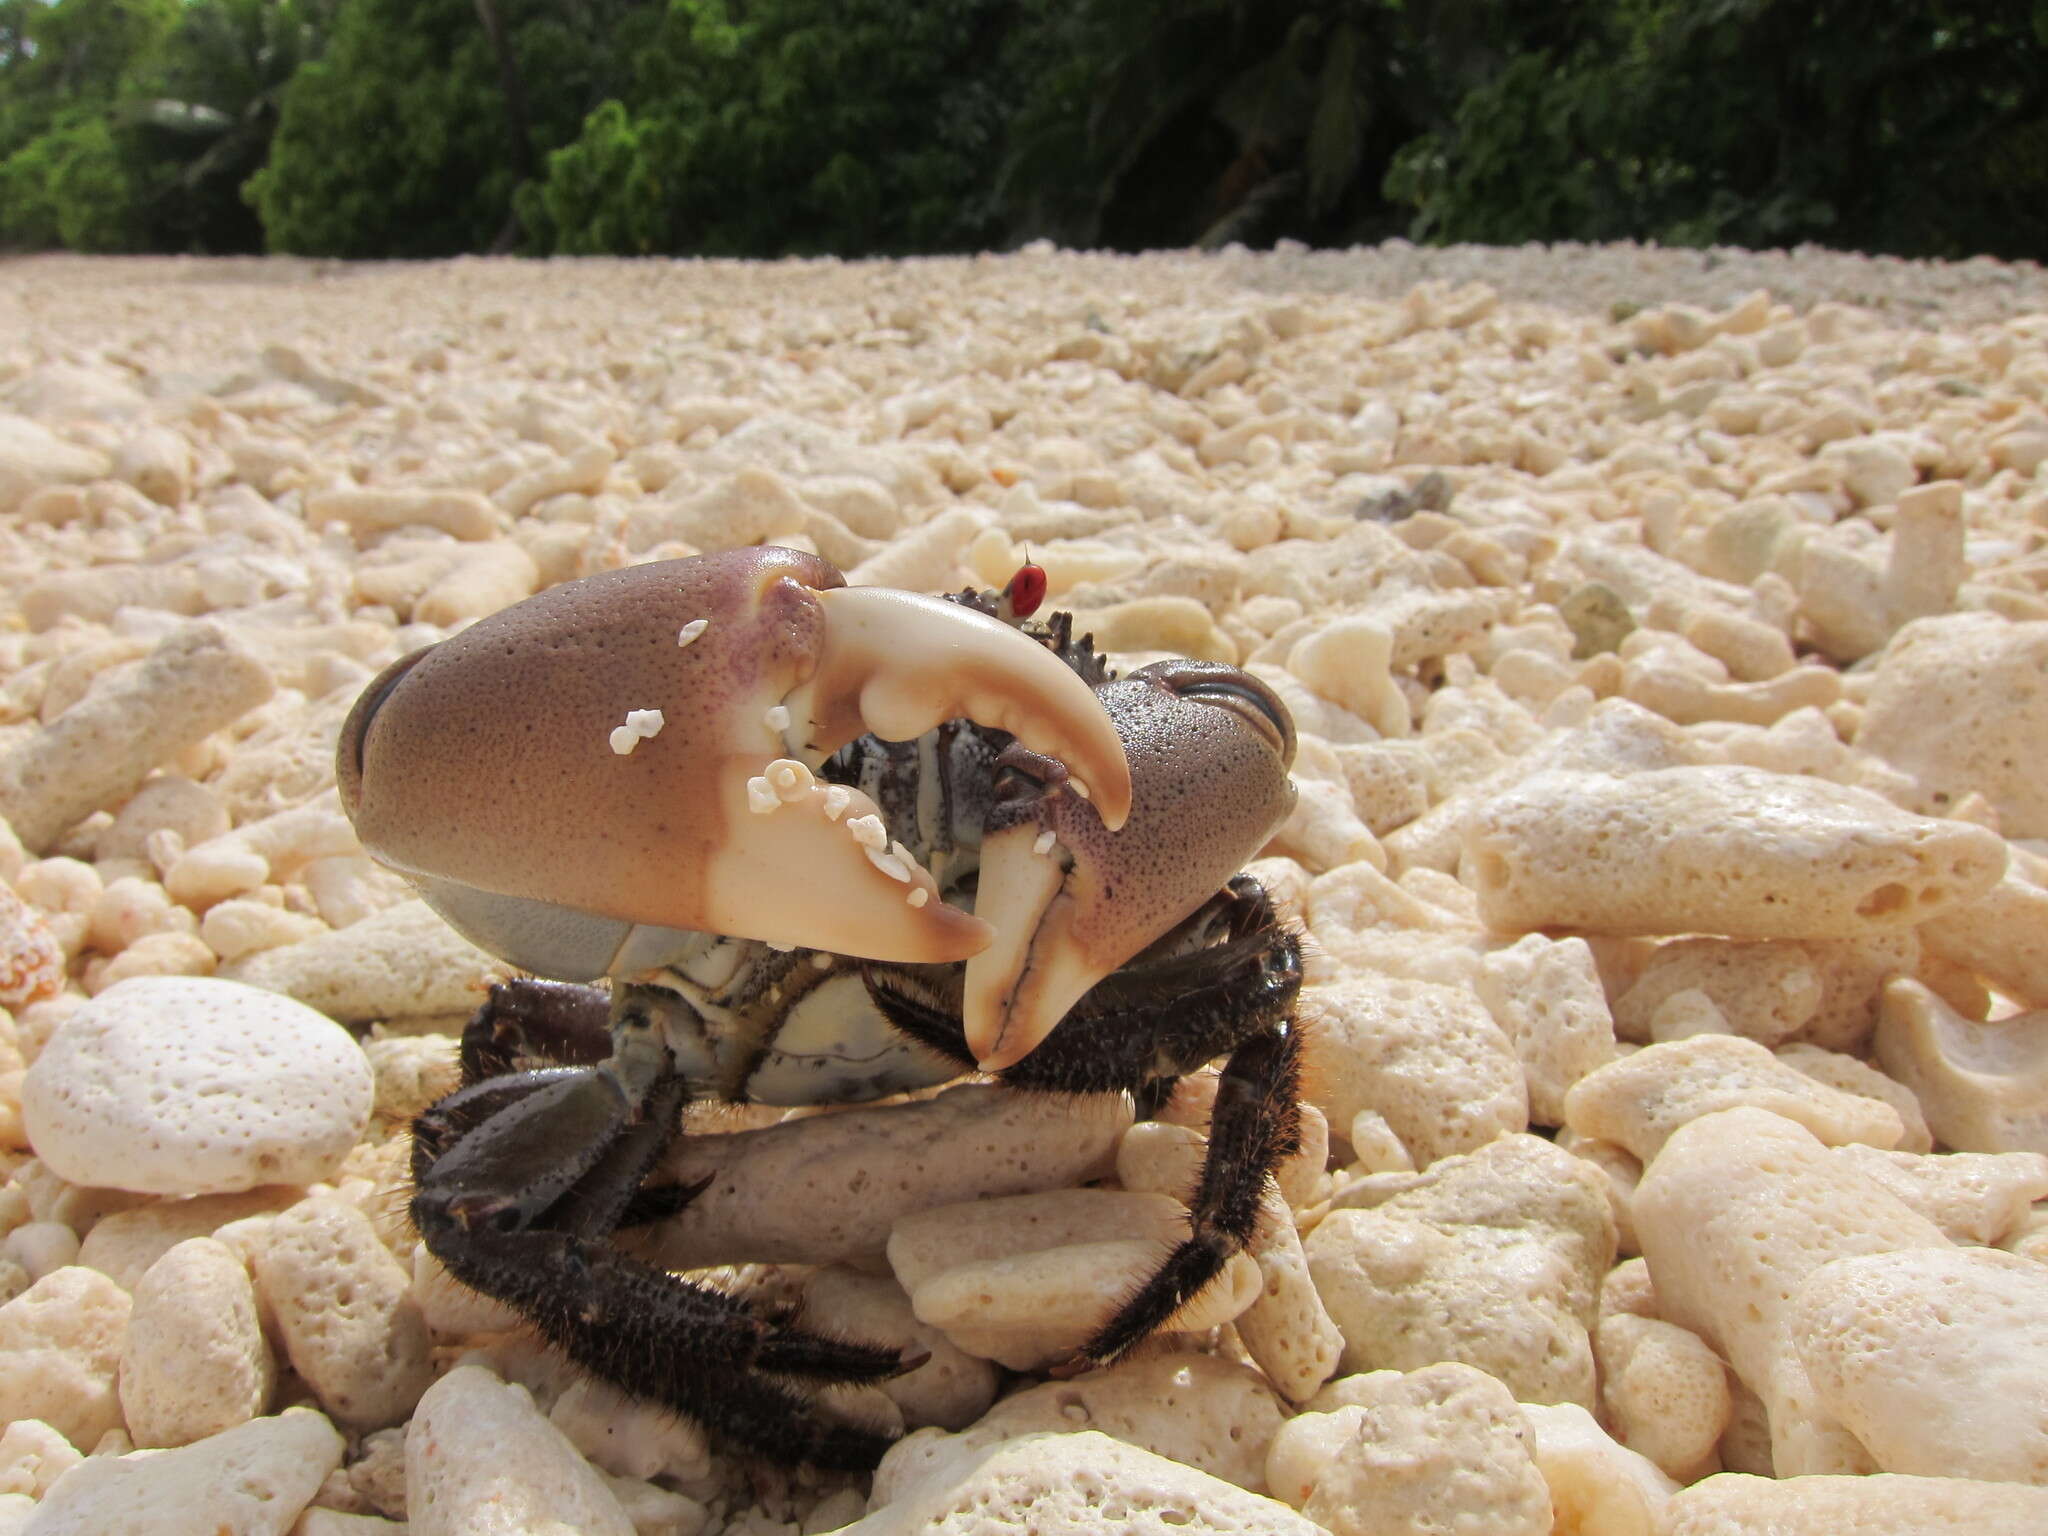 Image of smooth redeye crab